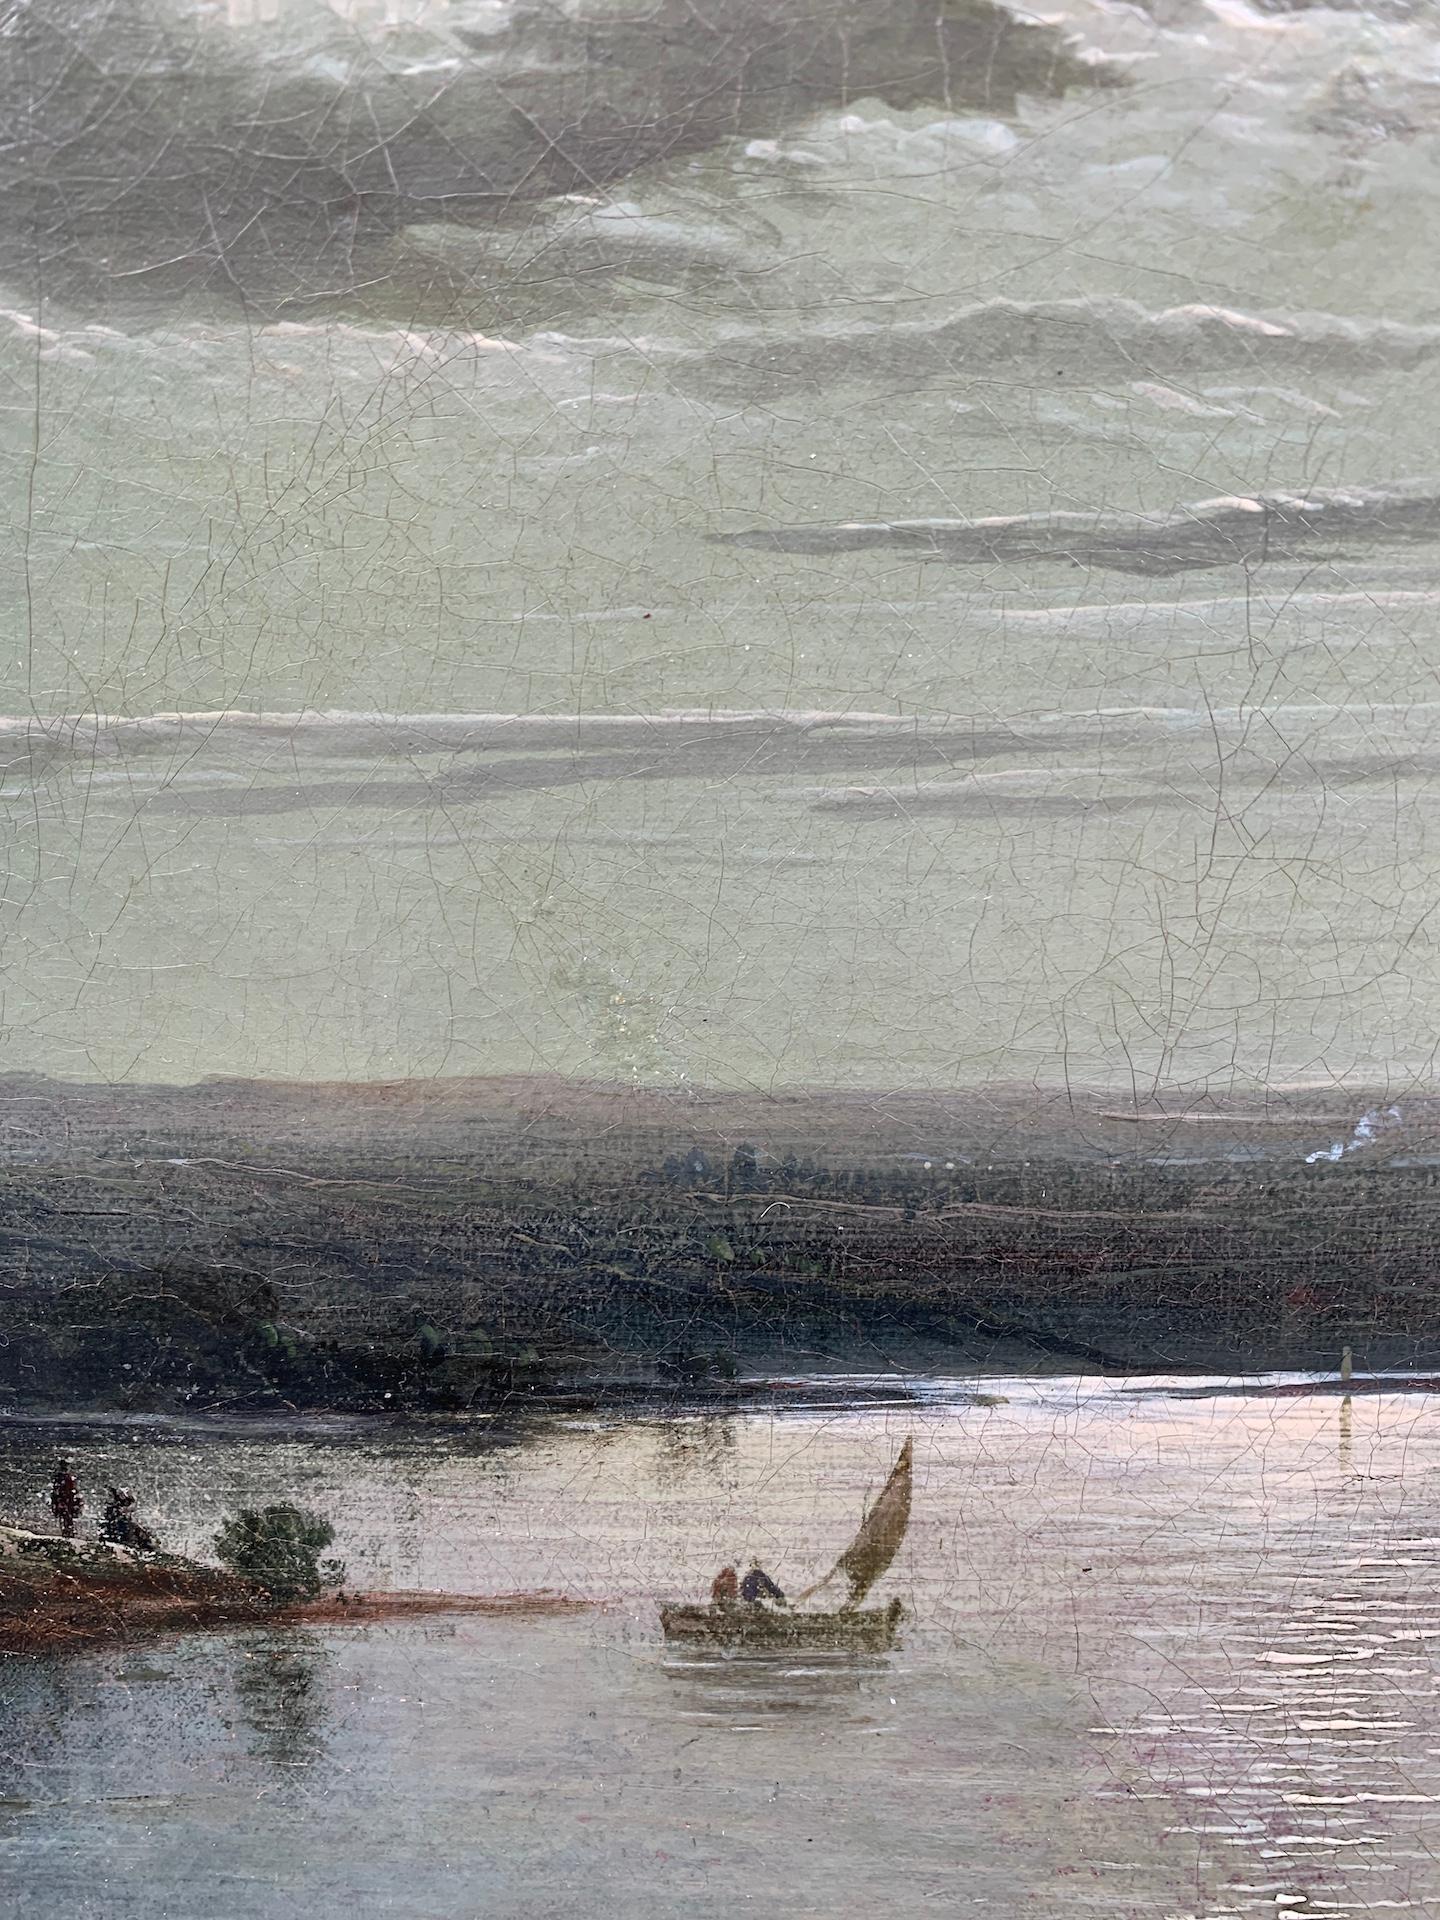 Henry Pether, fin du 18e siècle Paysage de lac au clair de lune.

Issu d'une famille d'artistes, Henry est le fils d'Abraham Pether (1756-1812), un talentueux peintre paysagiste originaire de Chichester, reconnu pour son habileté à dépeindre des